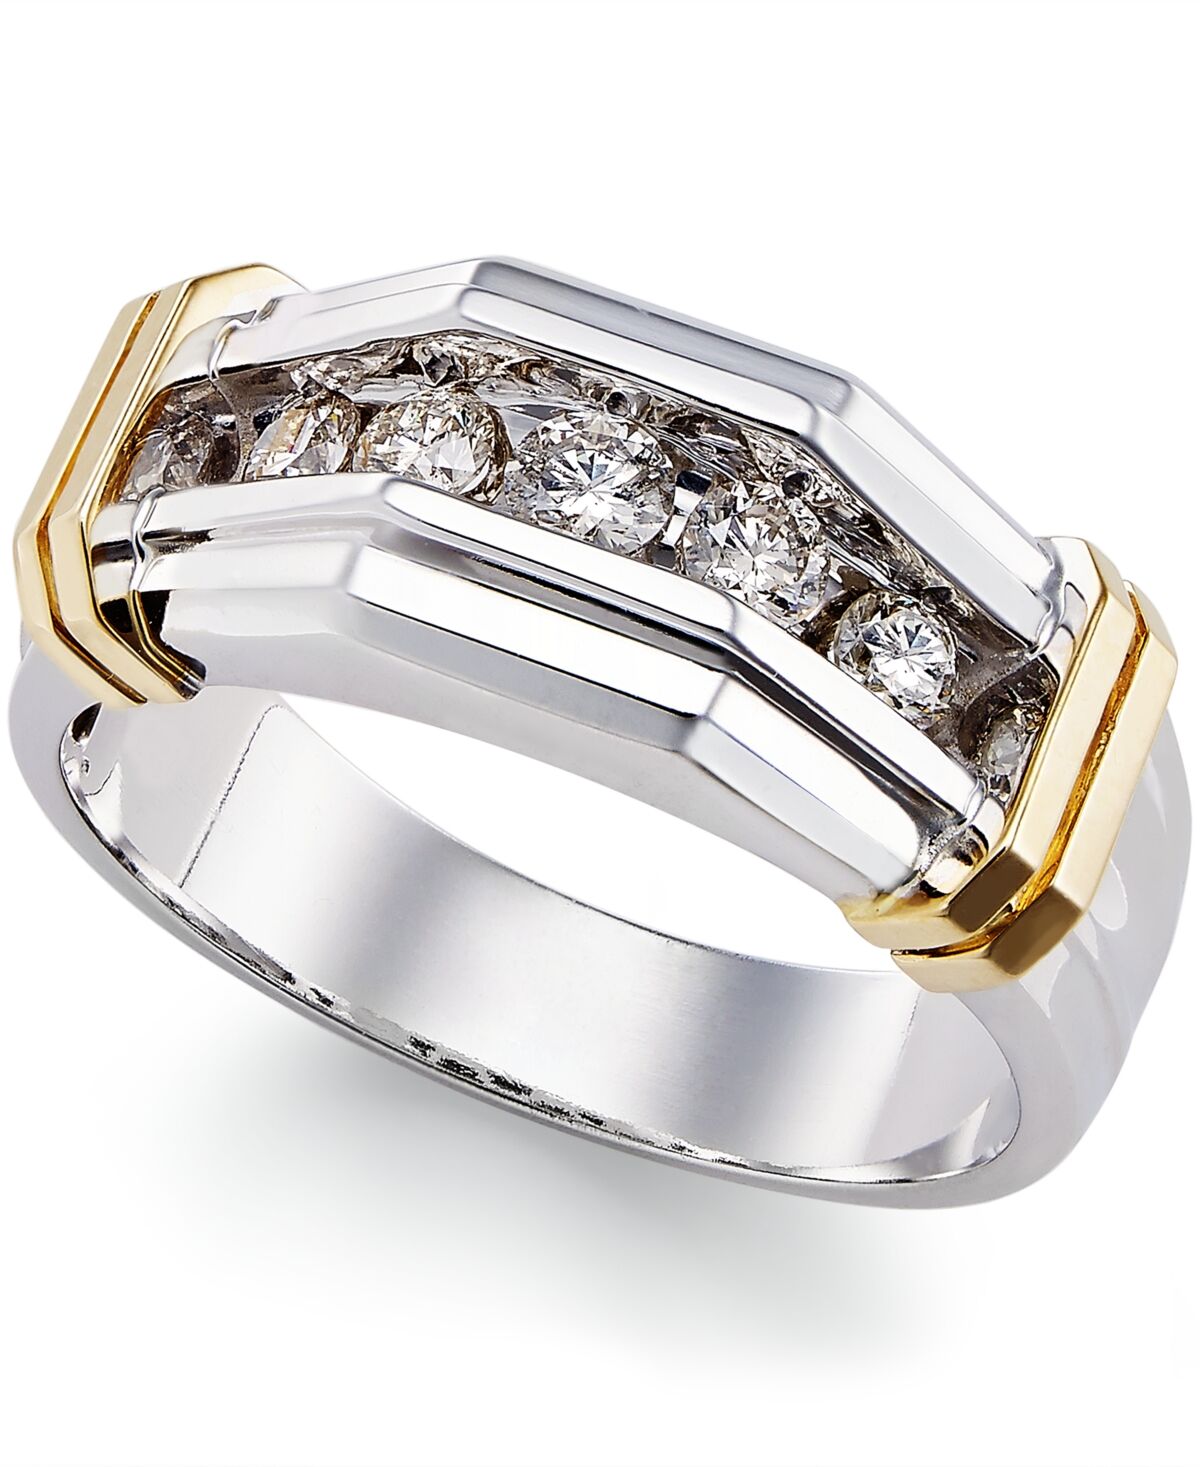 Macy's Men's Diamond Ring (1/2 ct. t.w.) in 10k Gold and White Gold - White Gold